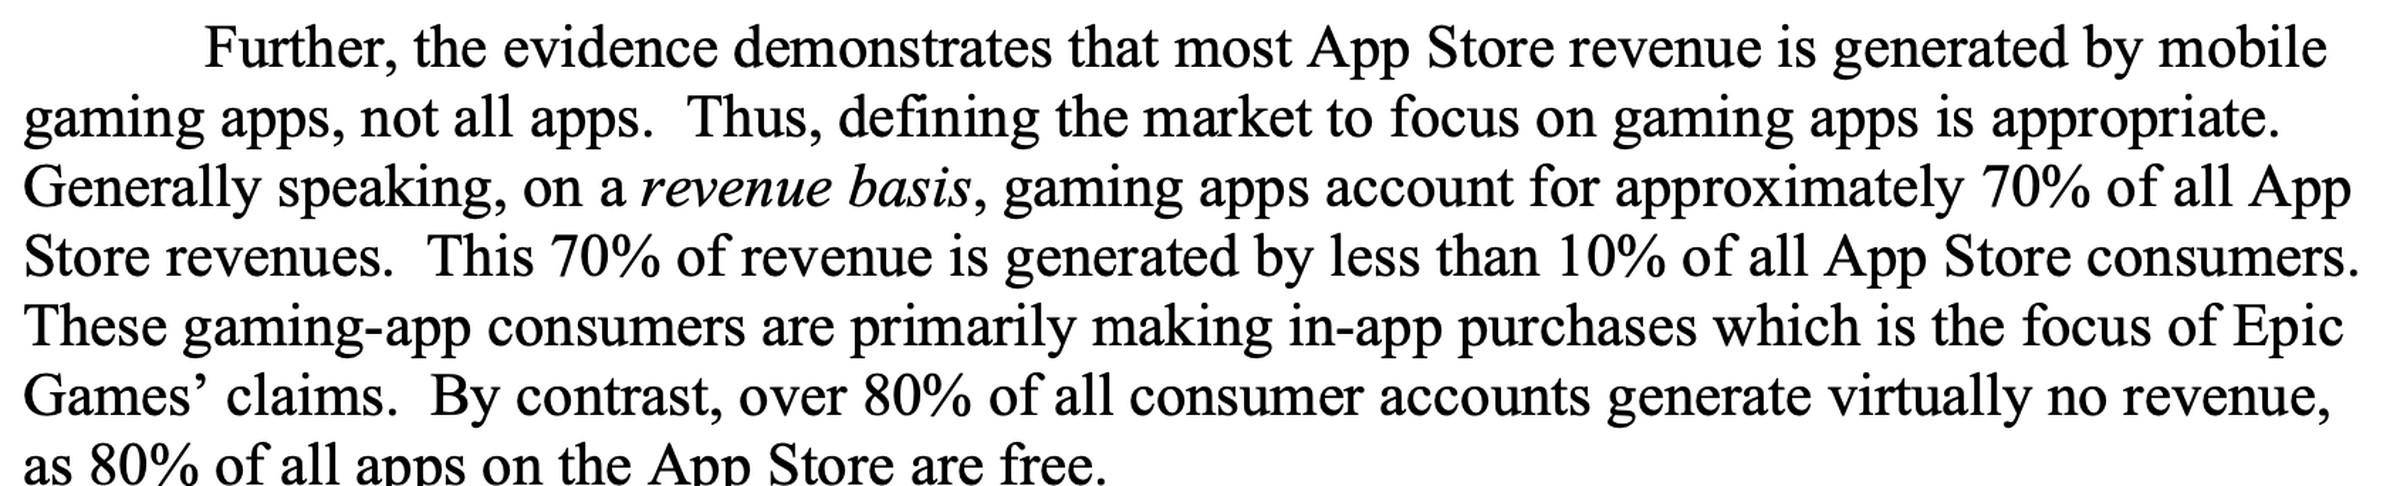 An excerpt from Judge Yvonne Gonzalez Rogers’ ruling detailing App Store revenue breakdown.